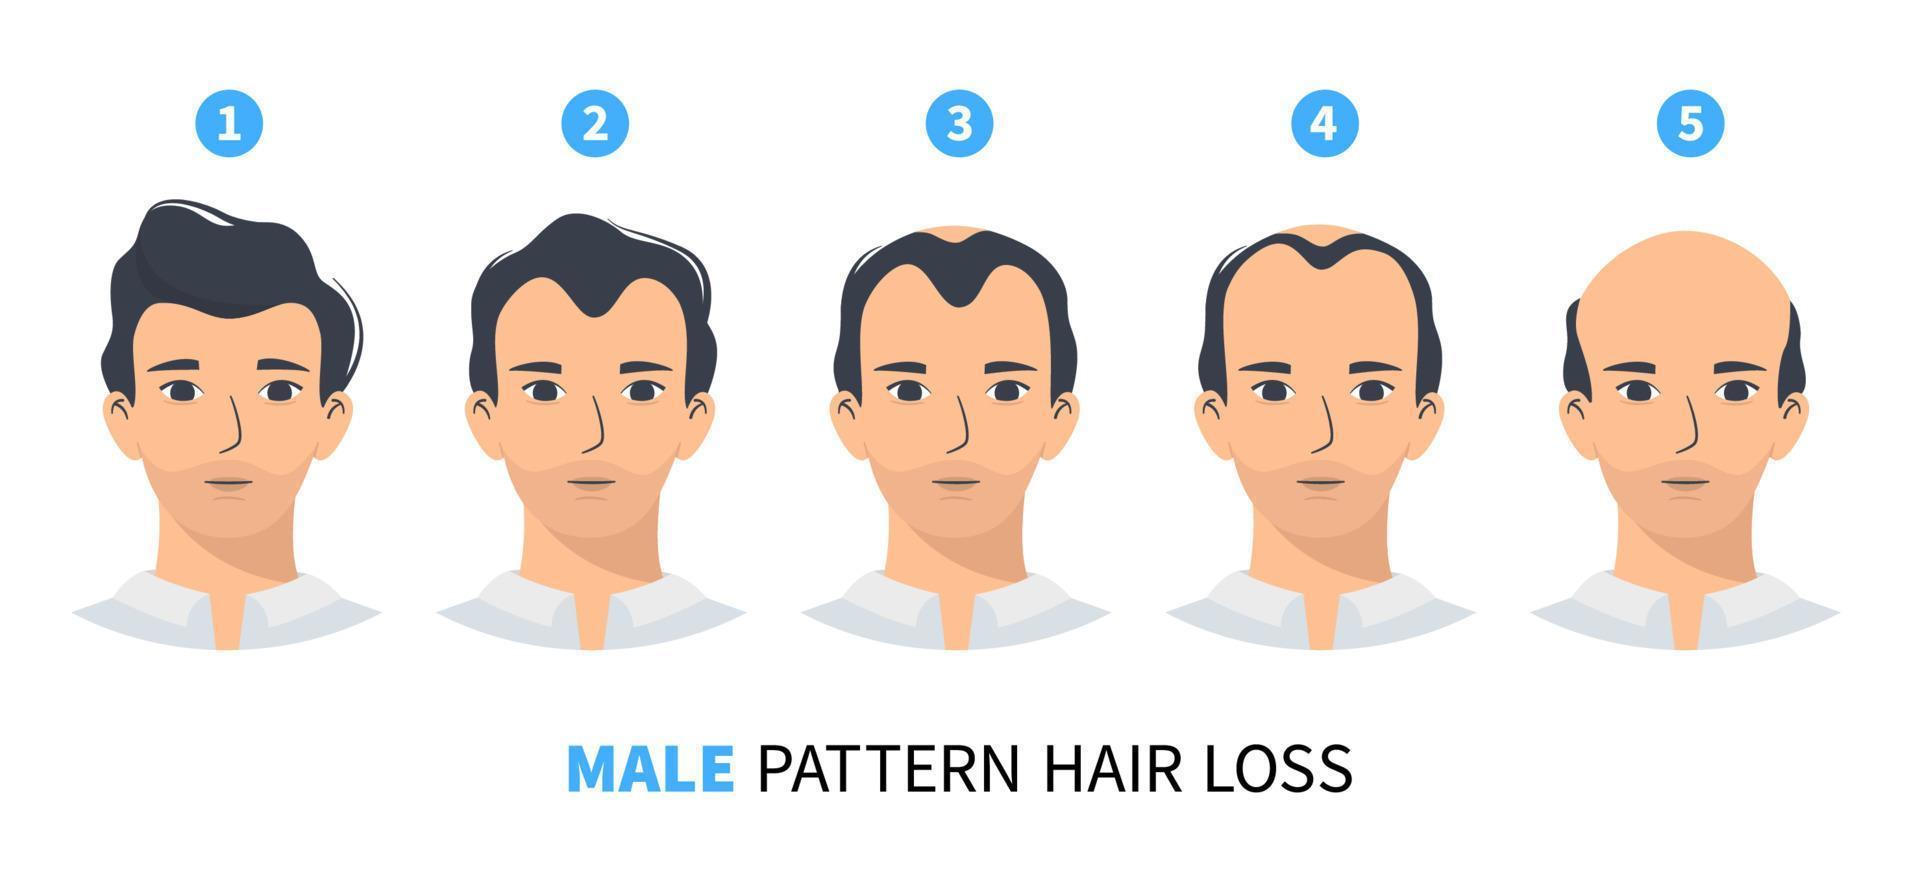 håravfall stadier, androgen alopeci manligt mönster. steg av skallighet vektor infographic i platt stil med en man. mphl